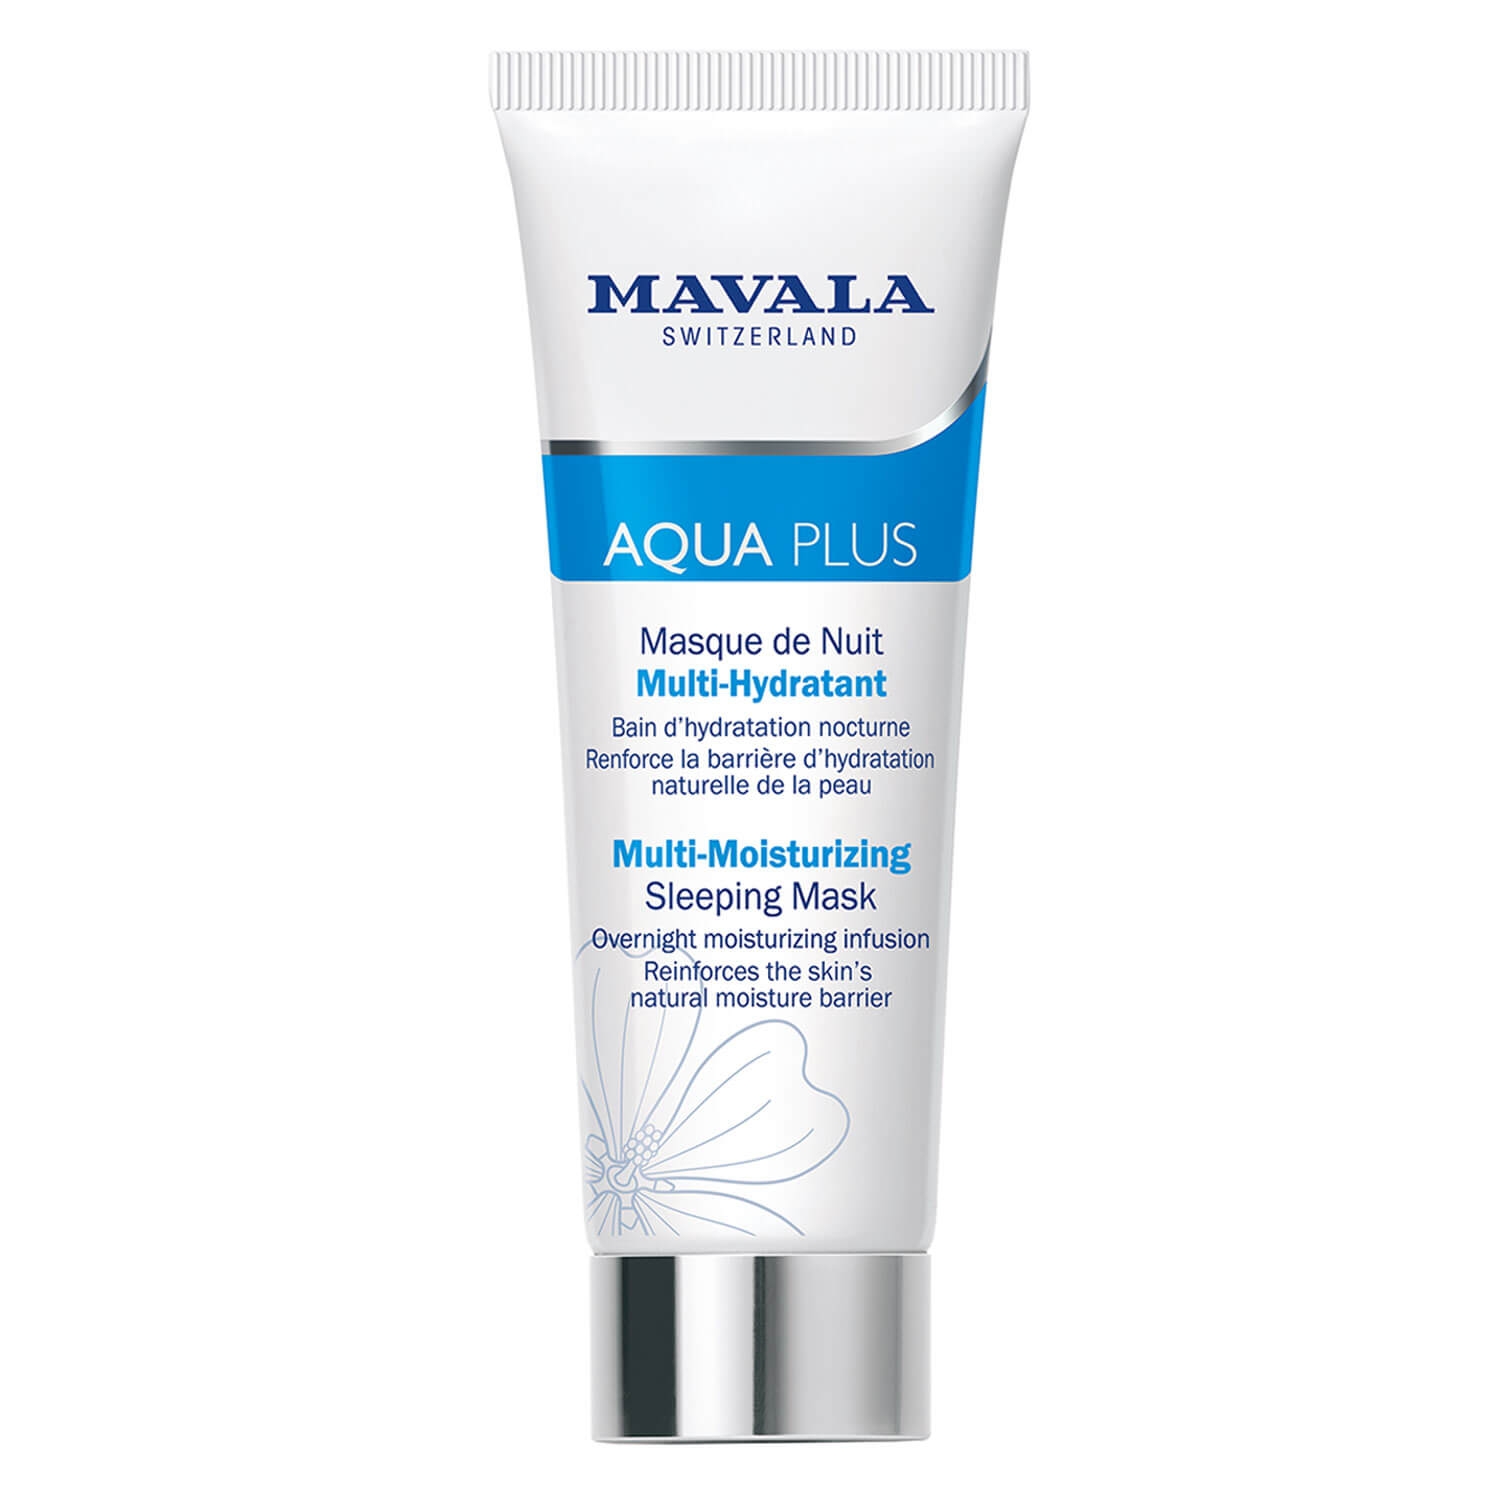 Produktbild von Swiss Skin Solution - Aqua Plus Masque de Nuit Multi-Hydratant